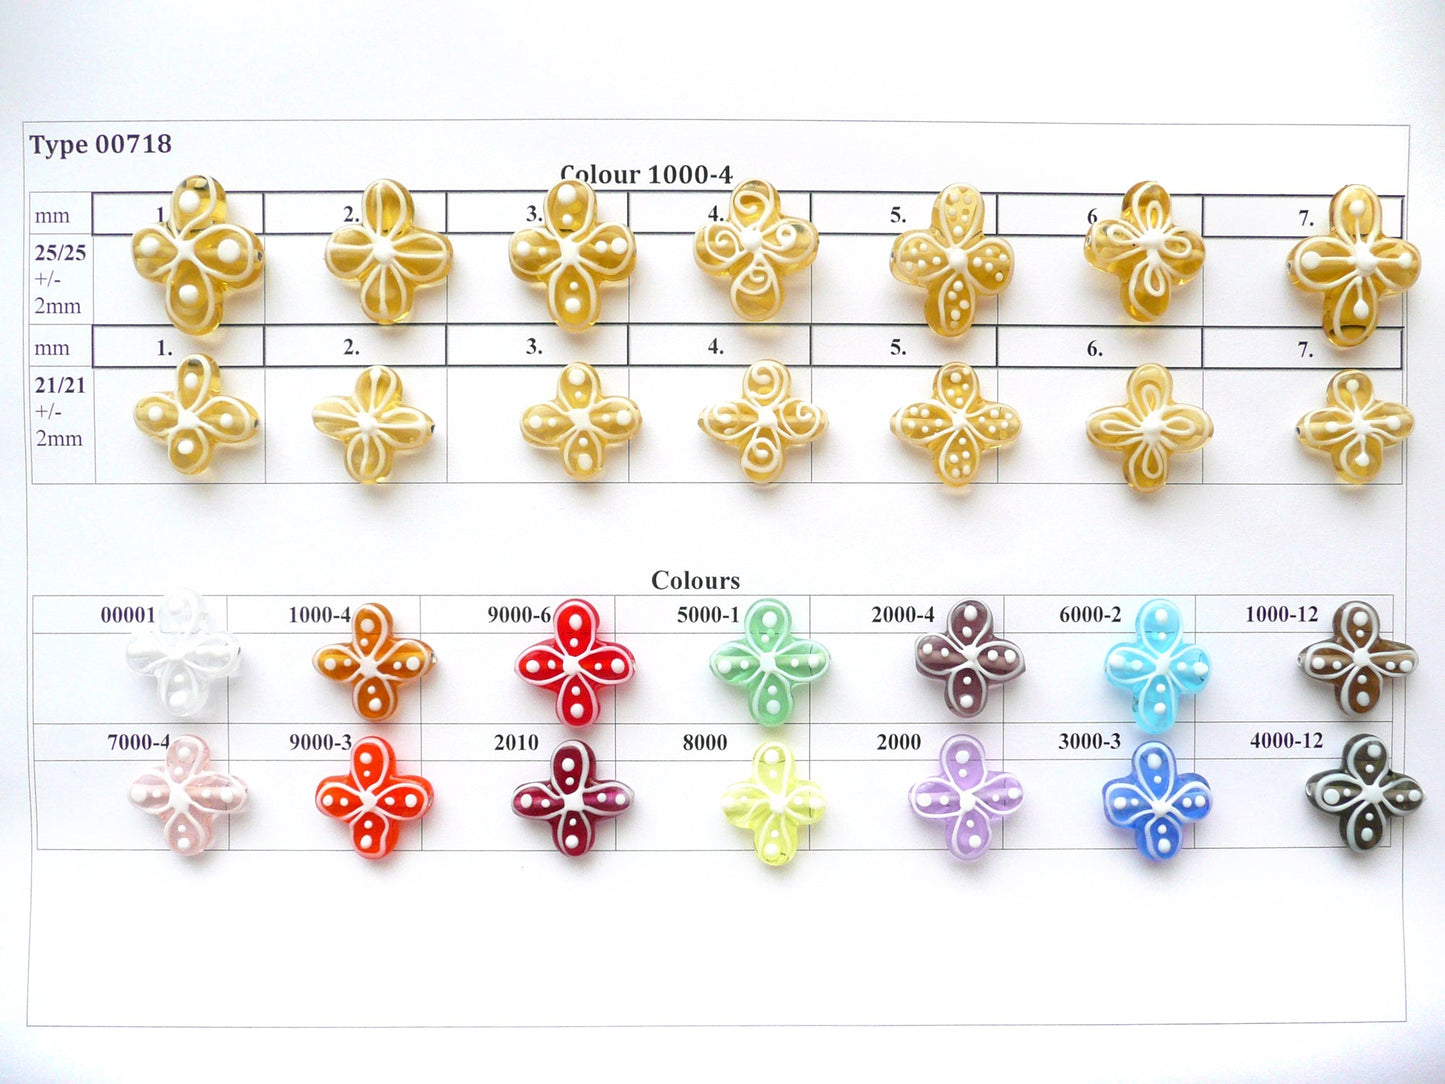 30 pcs Flower Lampwork Beads 718 / Design 7, Handmade, Preciosa Glass, Czech Republic